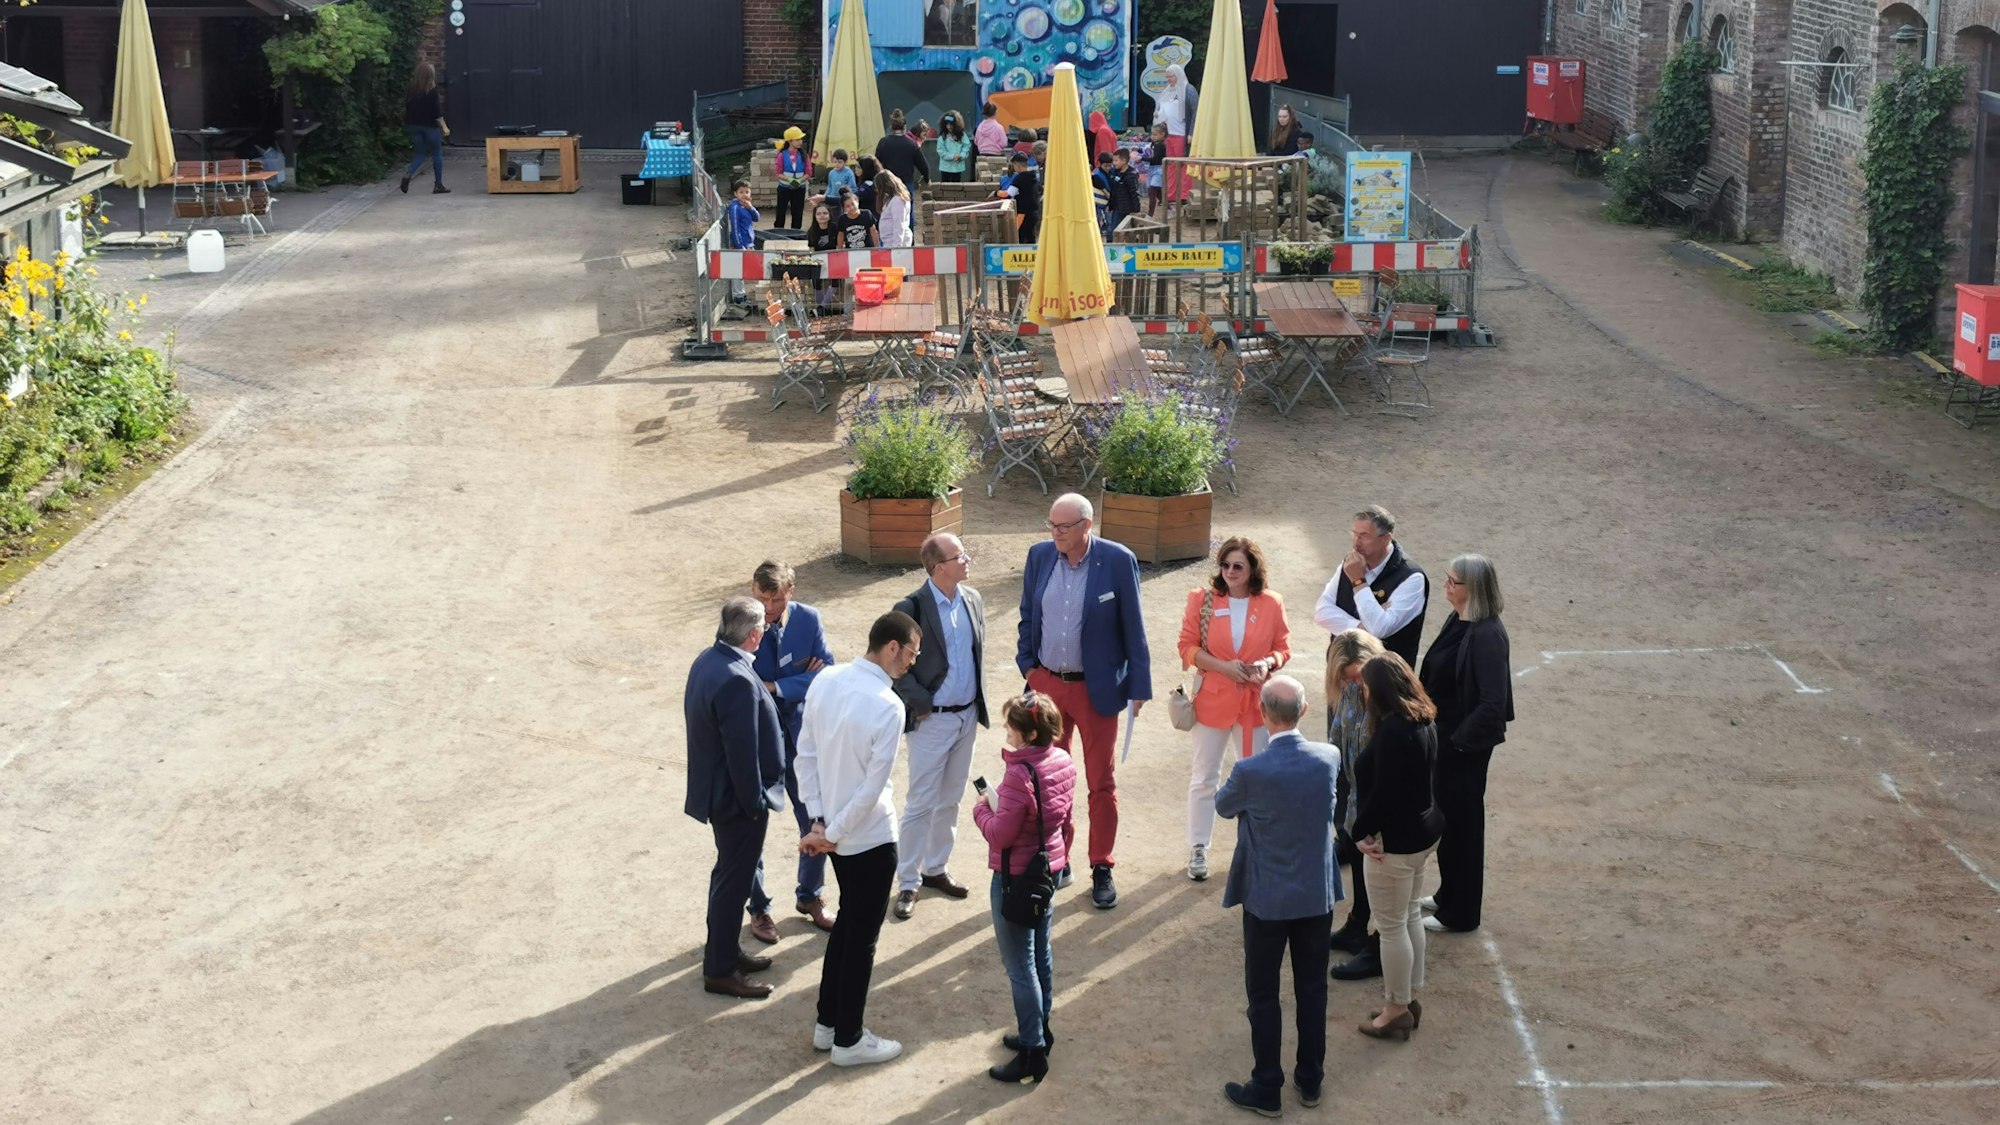 Es tut sich was auf dem Naturgut Ophoven, auch wenn man einstweilen nichts davon sehen kann. Die Planungen für eine interaktive Ausstellung zum Klimaschutz für Kinder und Familien kommen voran. 